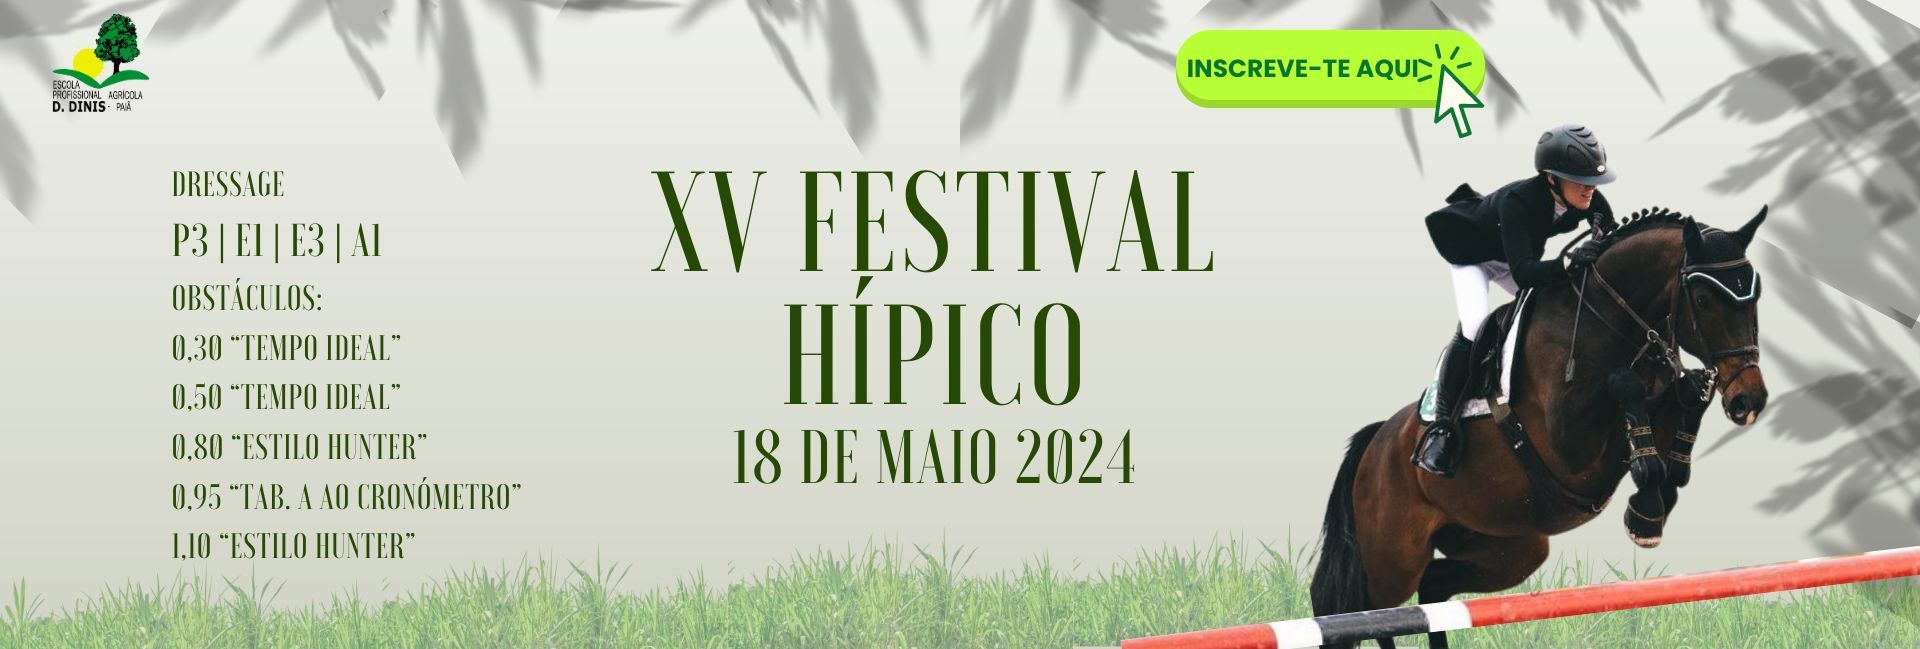 Festival Hipico